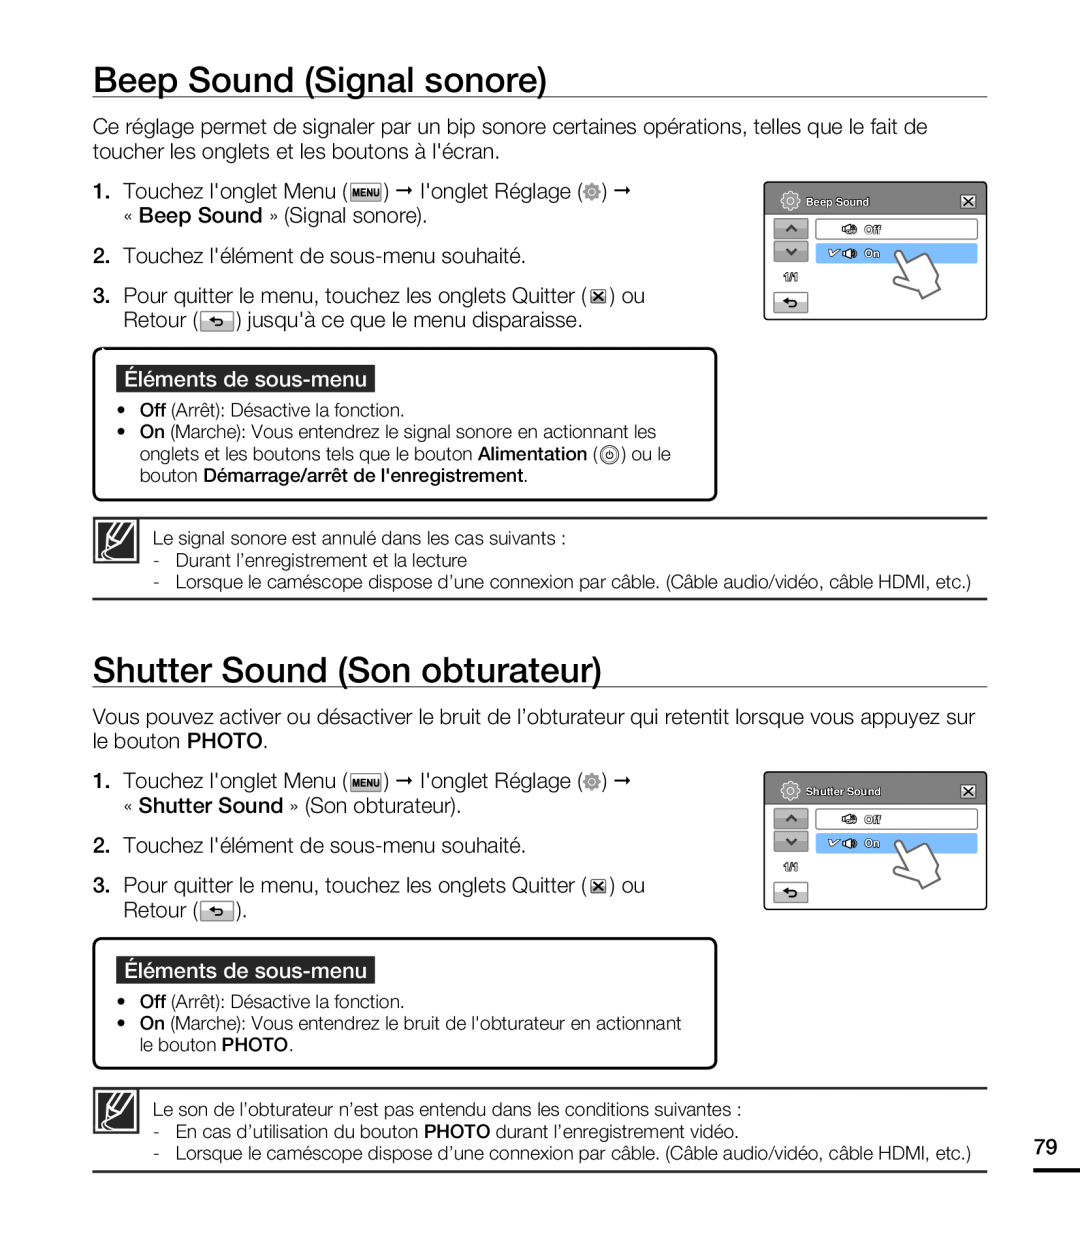 Samsung HMX-T10OP/EDC Beep Sound Signal sonore, Shutter Sound Son obturateur, Éléments de sous-menu, Beep Sound Off On 1/1 